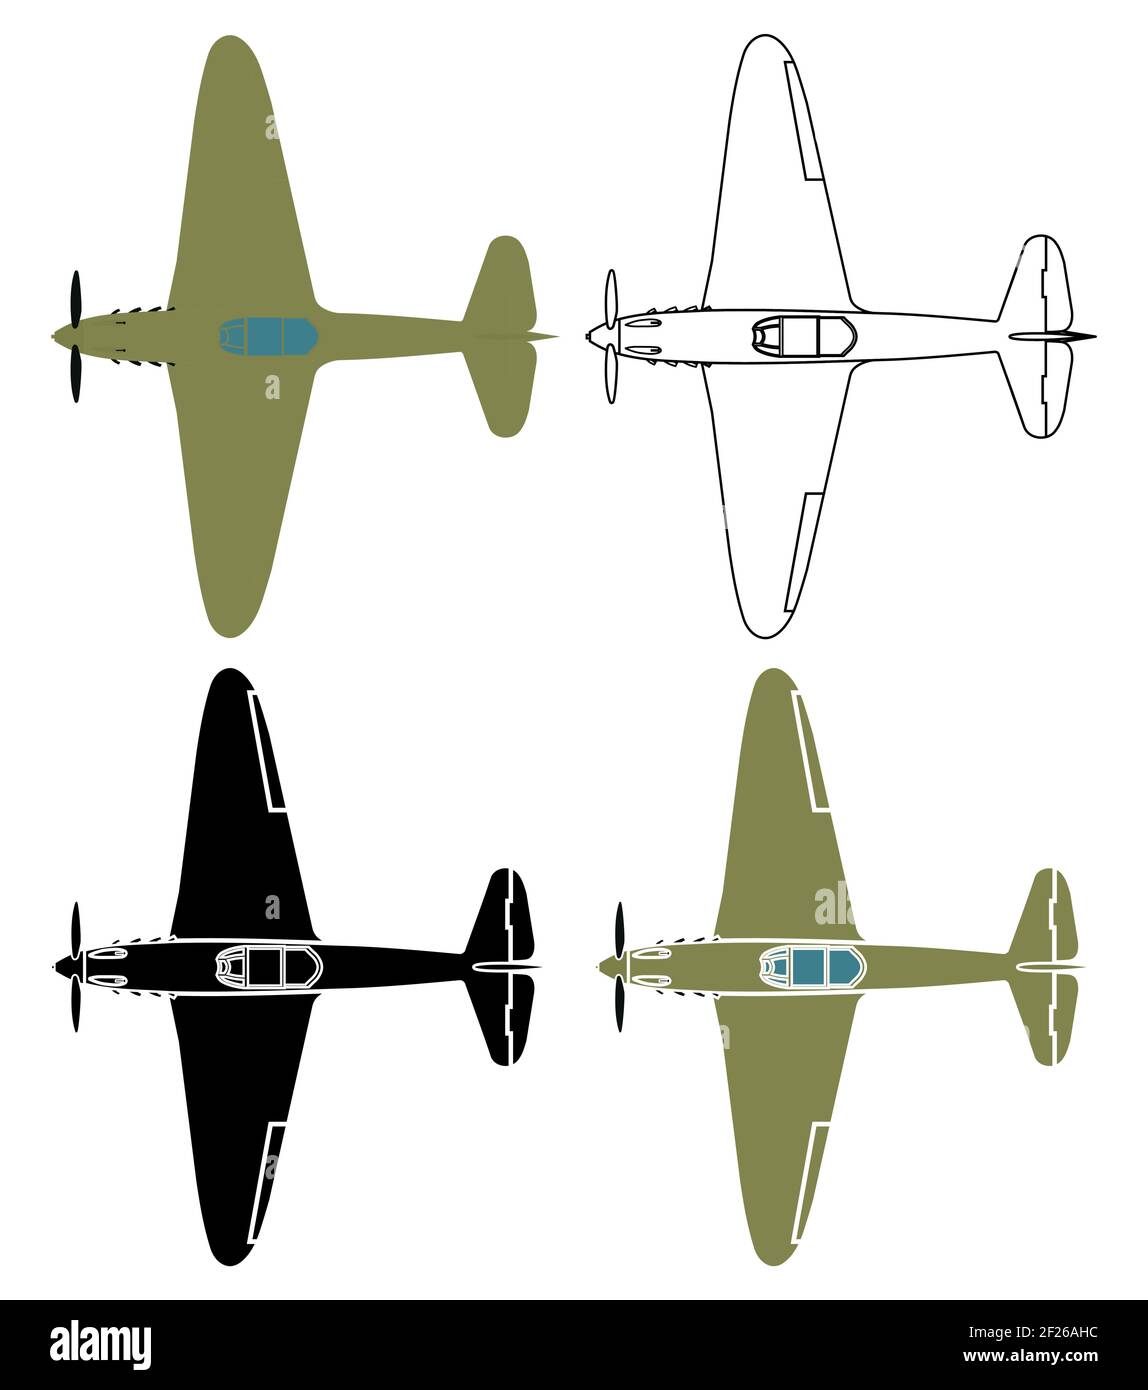 World of Warplanes, Yak 15, Review, Tier VIII